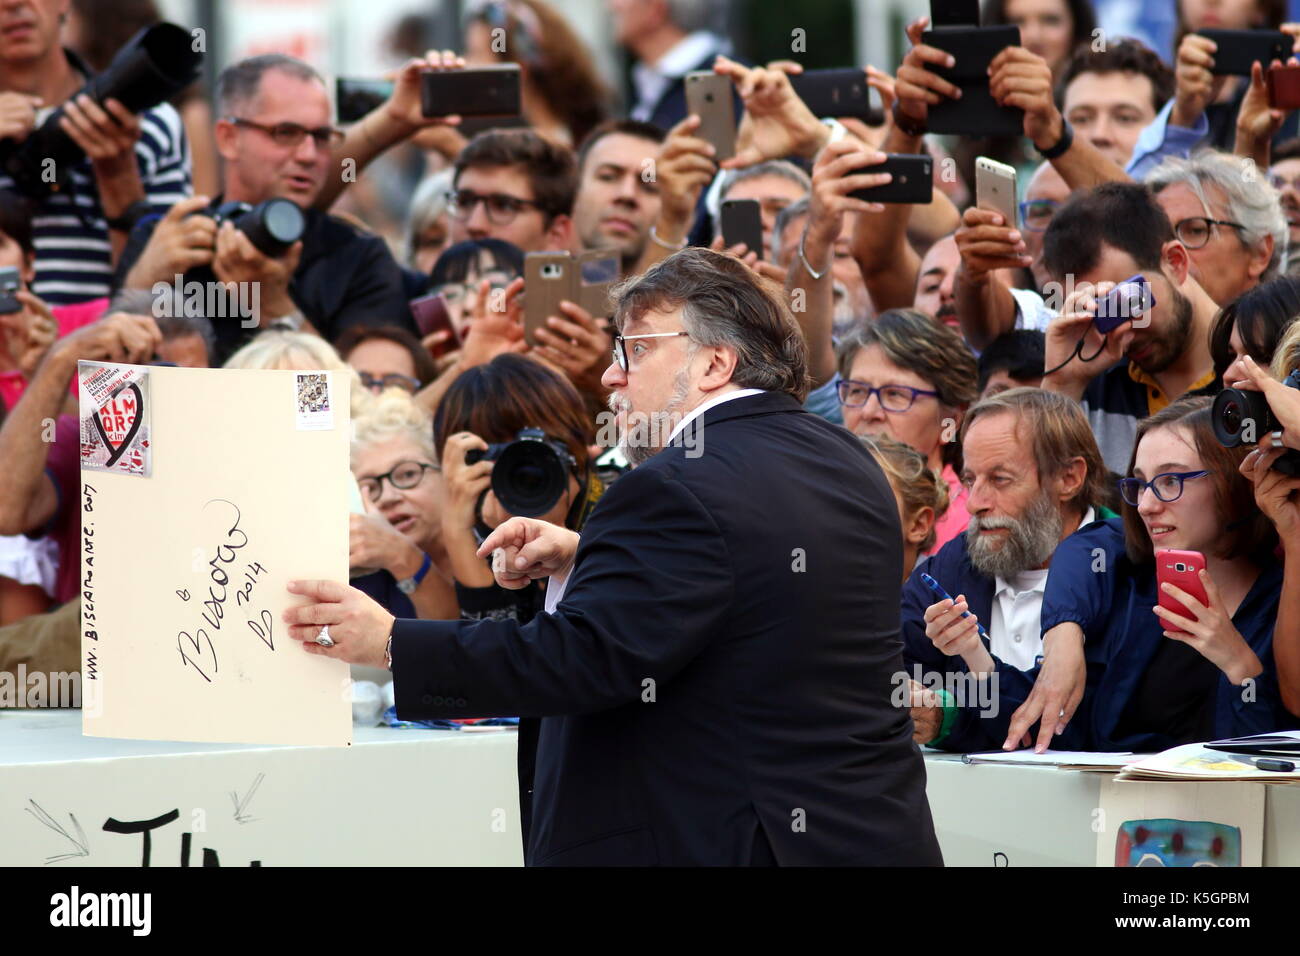 Venecia, Italia. 9 de septiembre de 2017. El Director Guillermo del Toro asiste a la ceremonia de entrega de premios durante el 74º Festival Internacional de Cine de Venecia en el Lido de Venecia el 9 de septiembre de 2017. Crédito: Andrea Spinelli/Alamy Live News Foto de stock